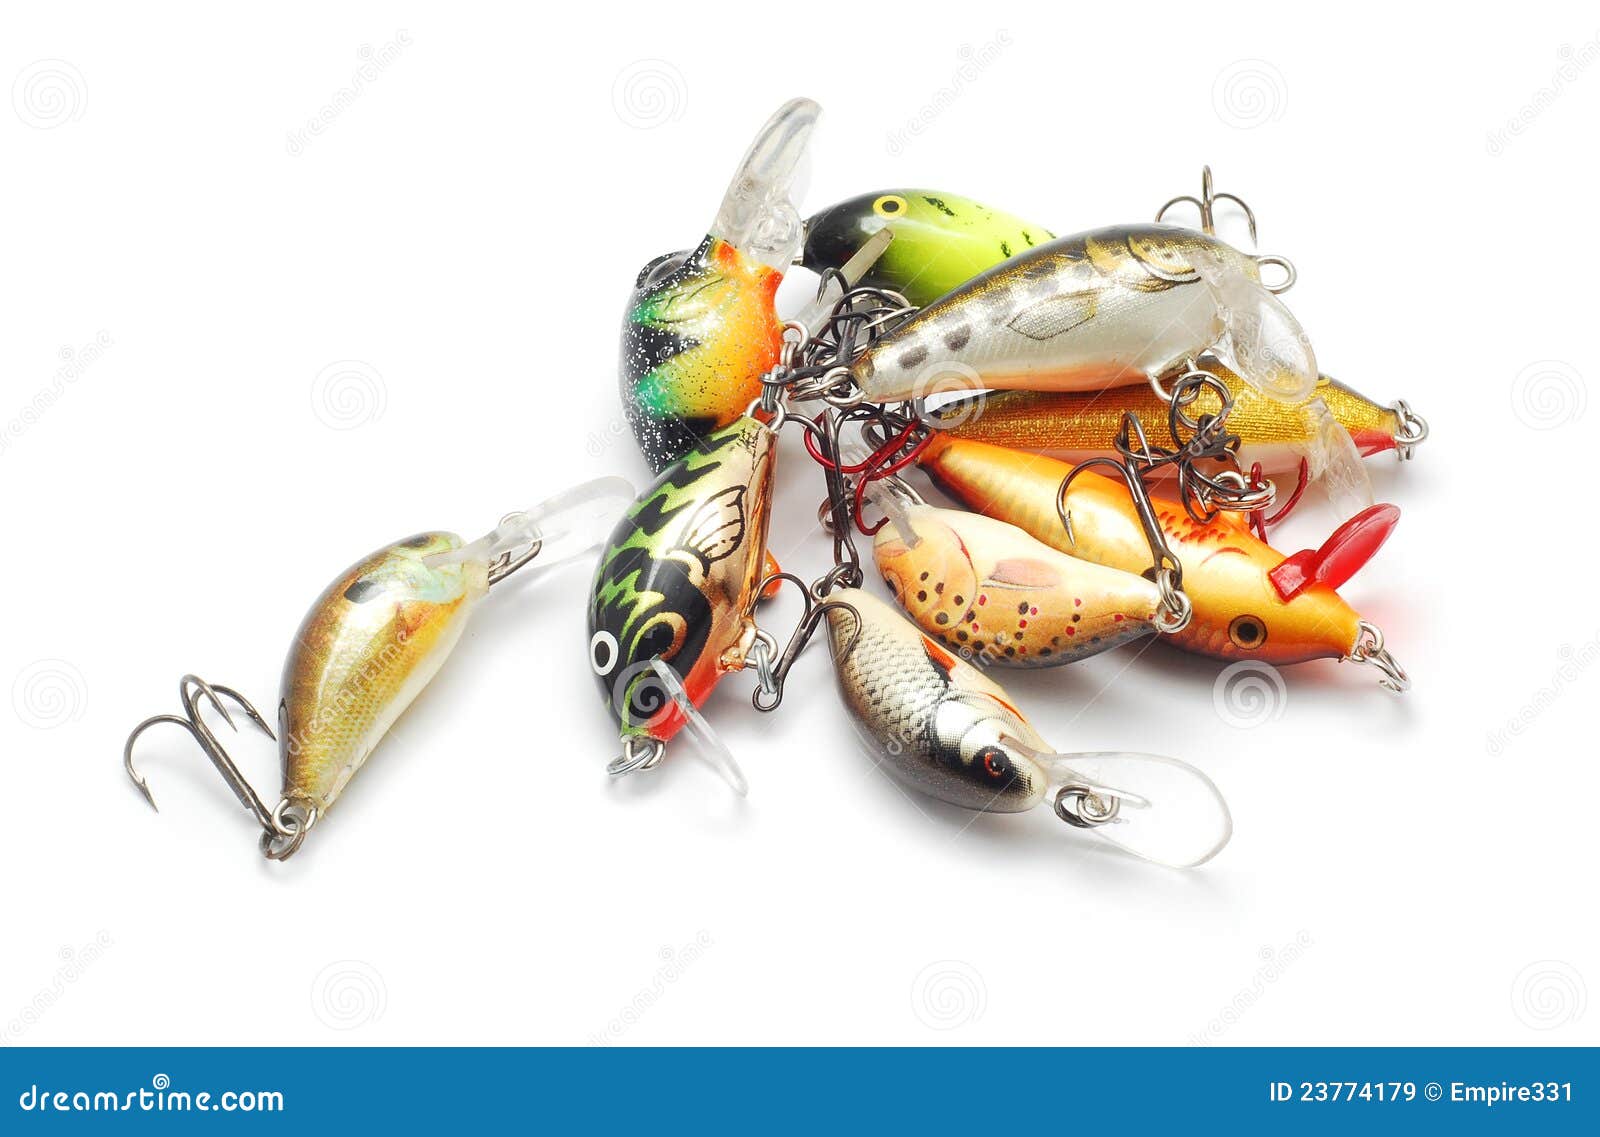 Fishing lures stock image. Image of fishing, metal, hook - 23774179